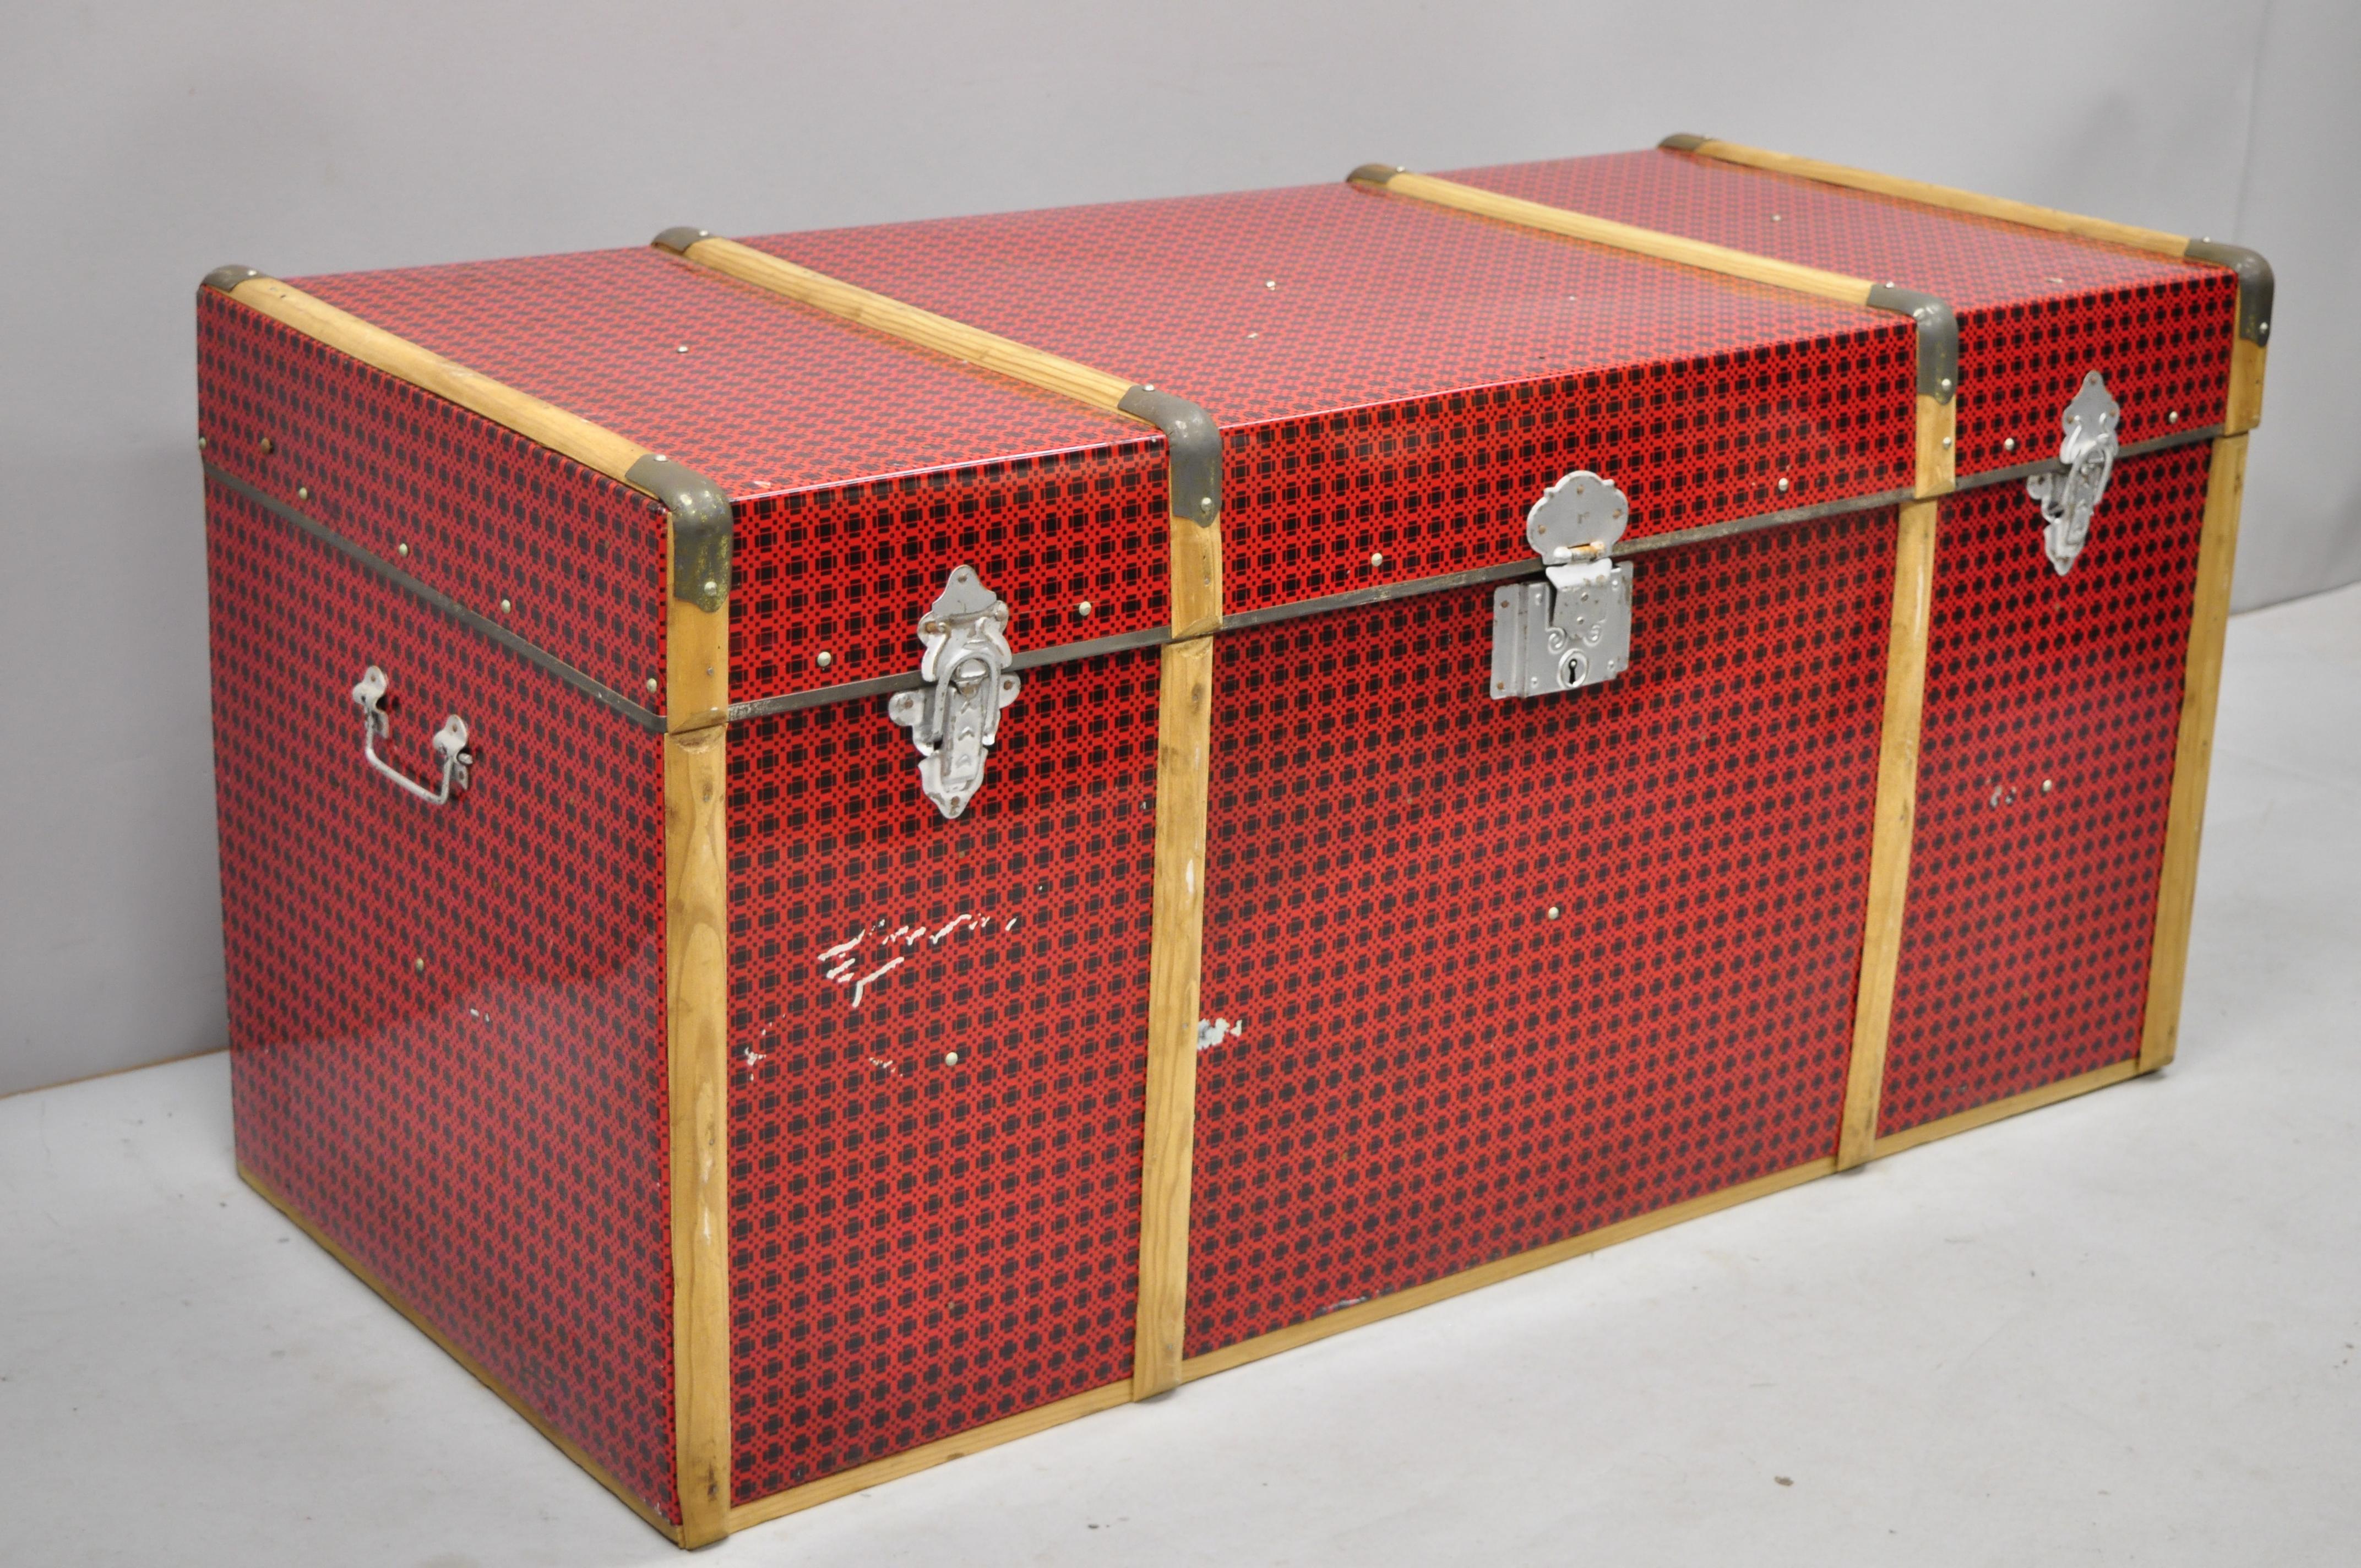 Vintage wood tin metal wrapped red faux cane wicker chest trunk box. L'article comprend un cadre enveloppé de métal au design rouge 